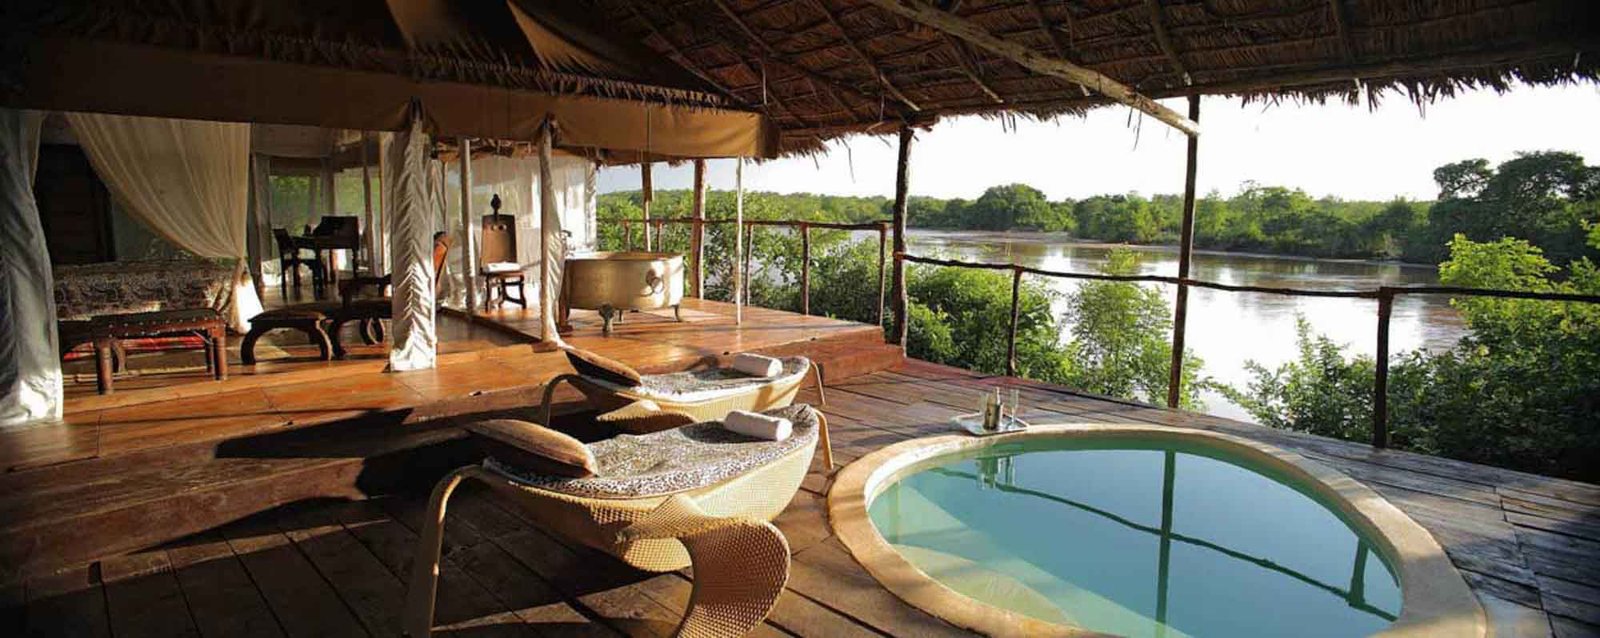 Hotel lujo Serengeti - Agencia de viajes Africaatumedida